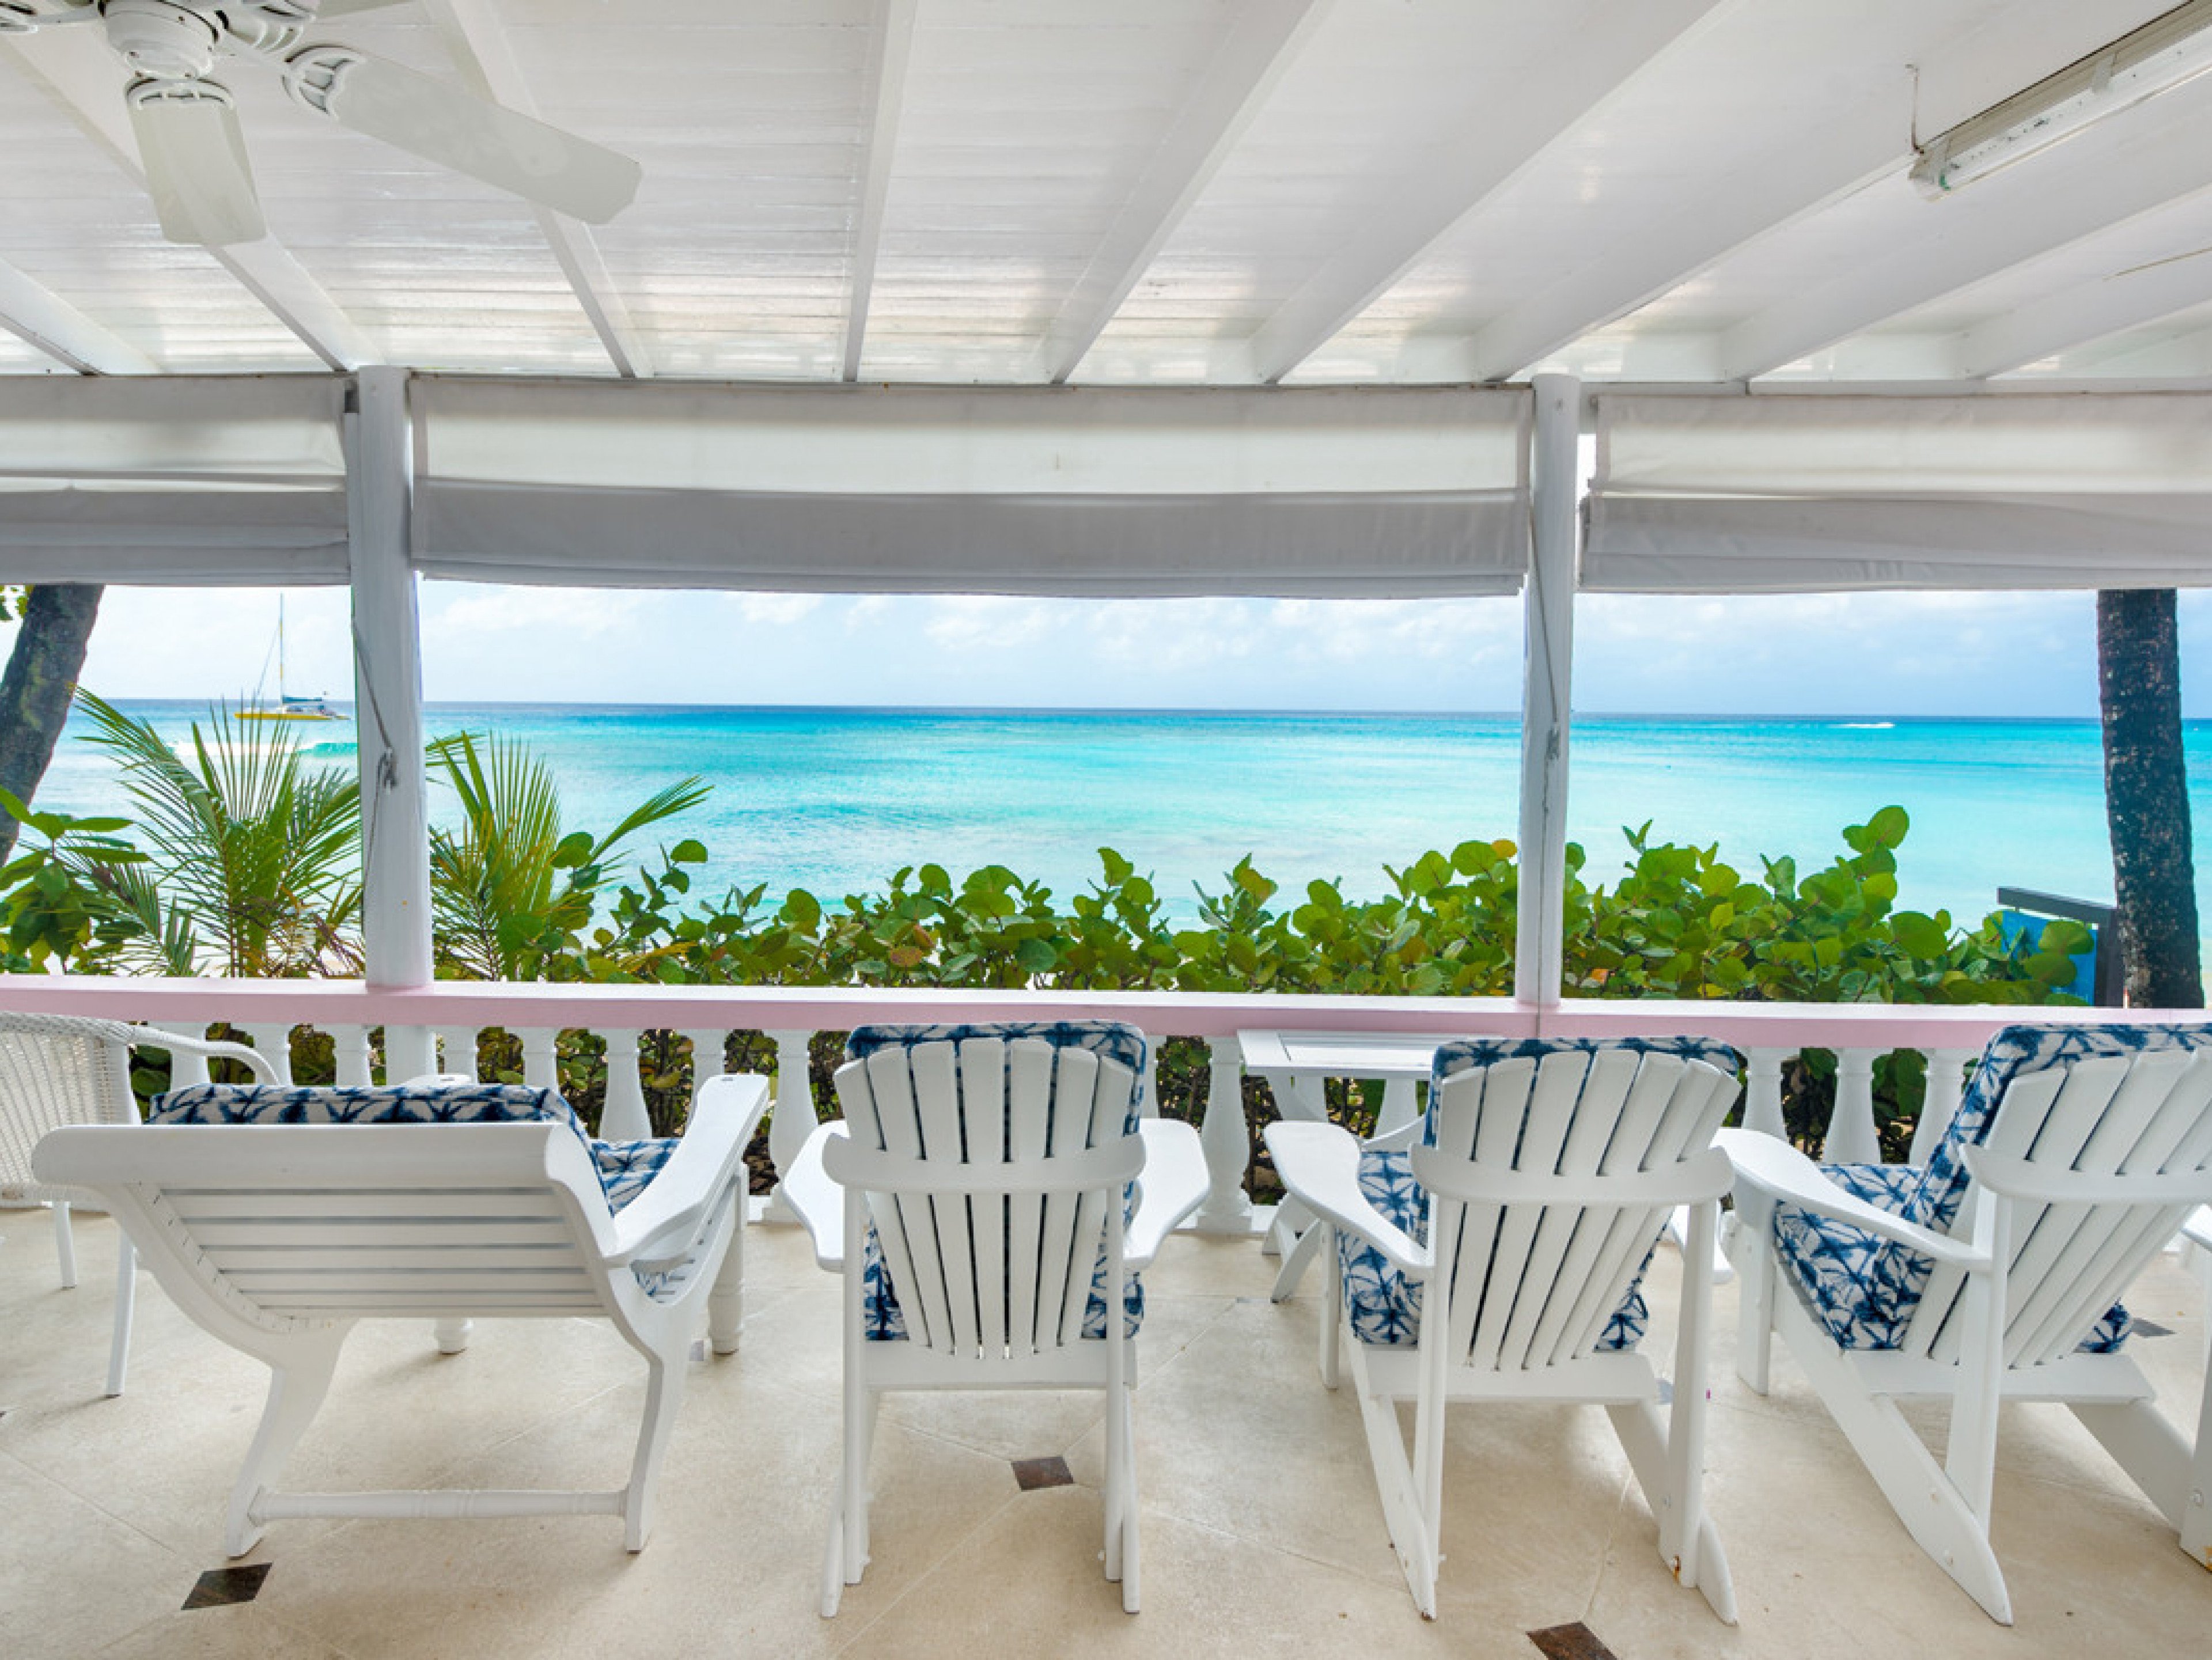 Belair Mullins Bay villas with ocean views